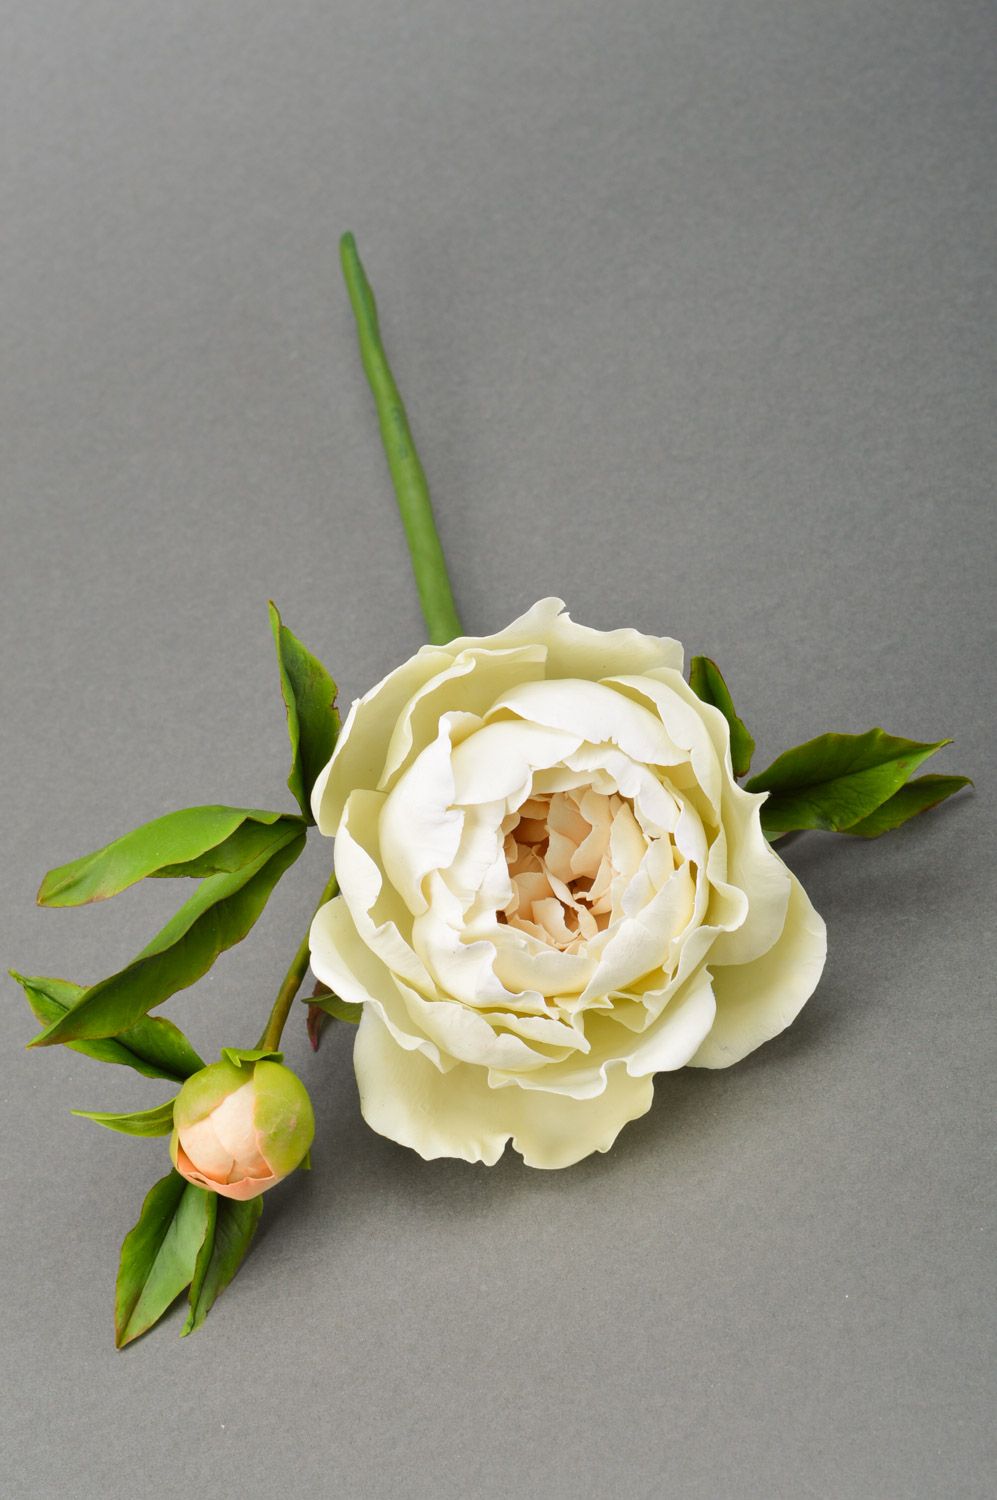 Цветок пиона из полимерной глины ручной работы белый крупный декоративный фото 2